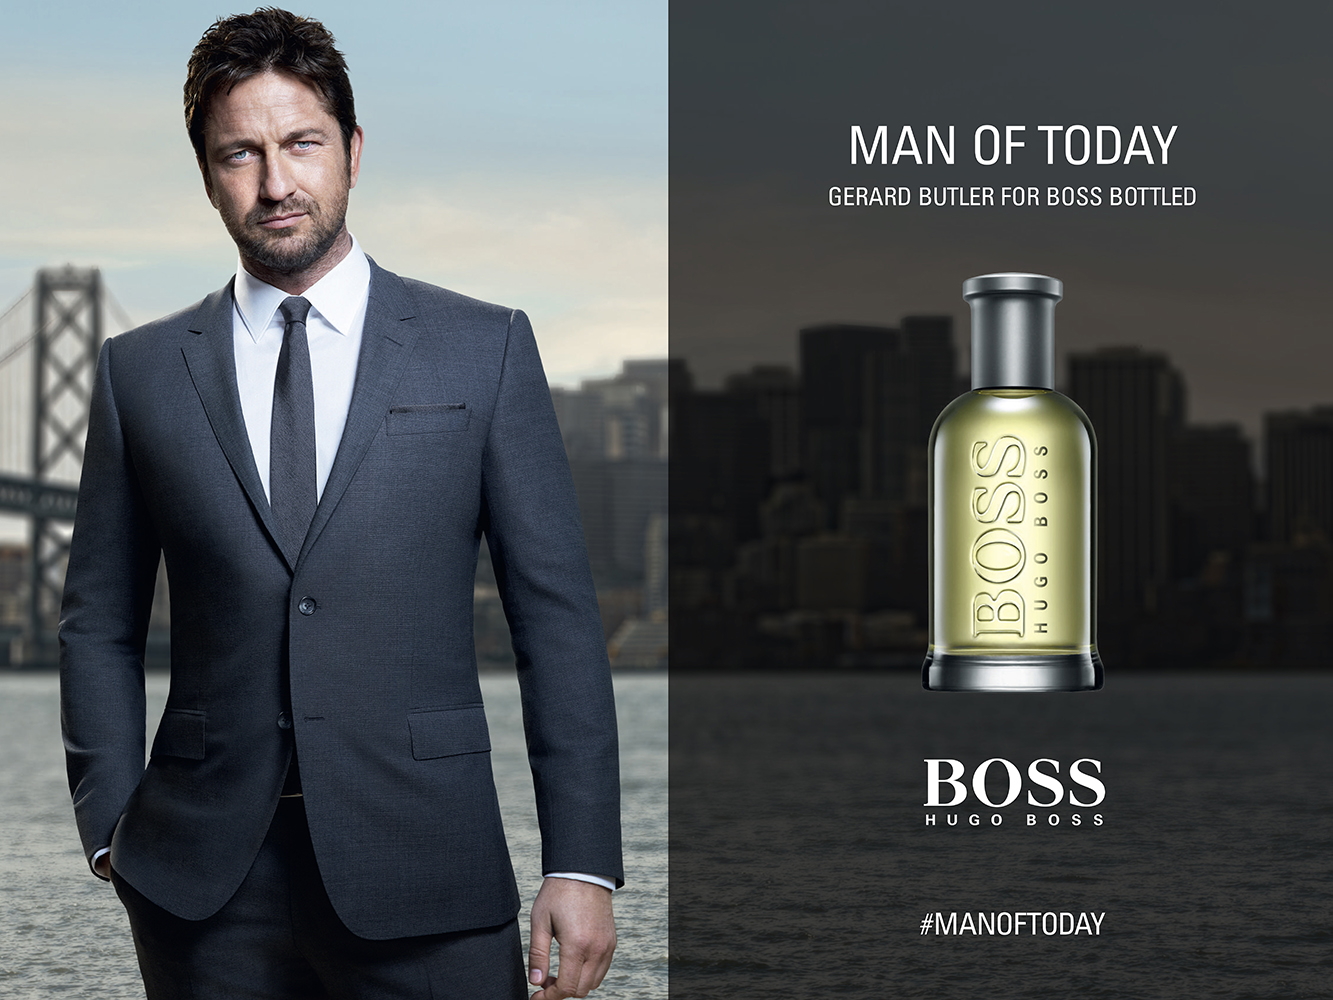 Boss Bottled Hugo Boss for men afiş poster commercial erkek manken NewYork.jpg